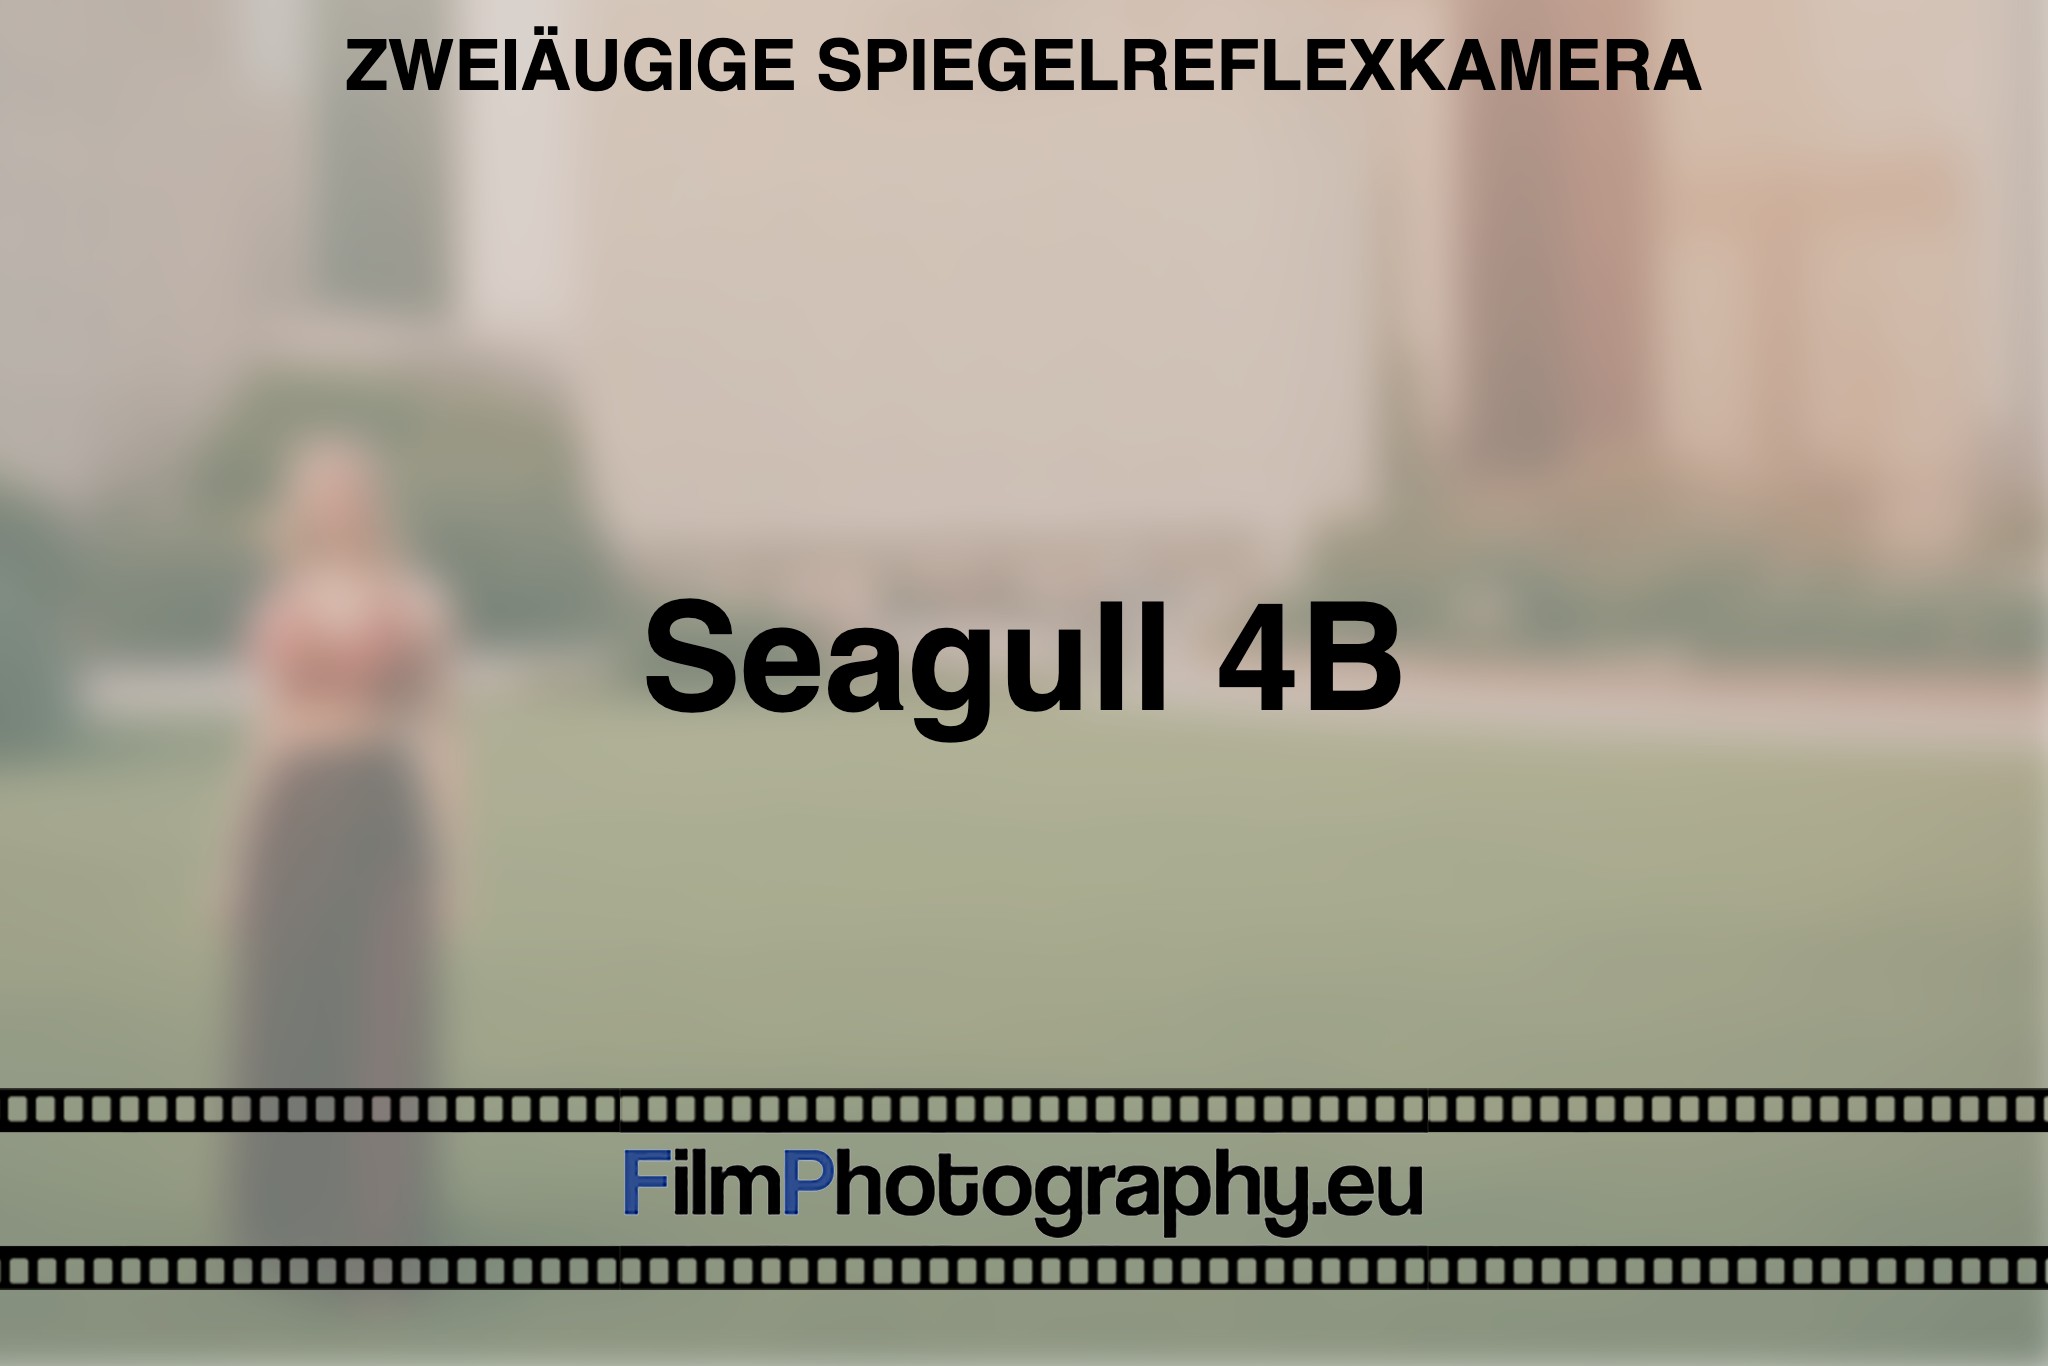 seagull-4b-zweiaeugige-spiegelreflexkamera-bnv